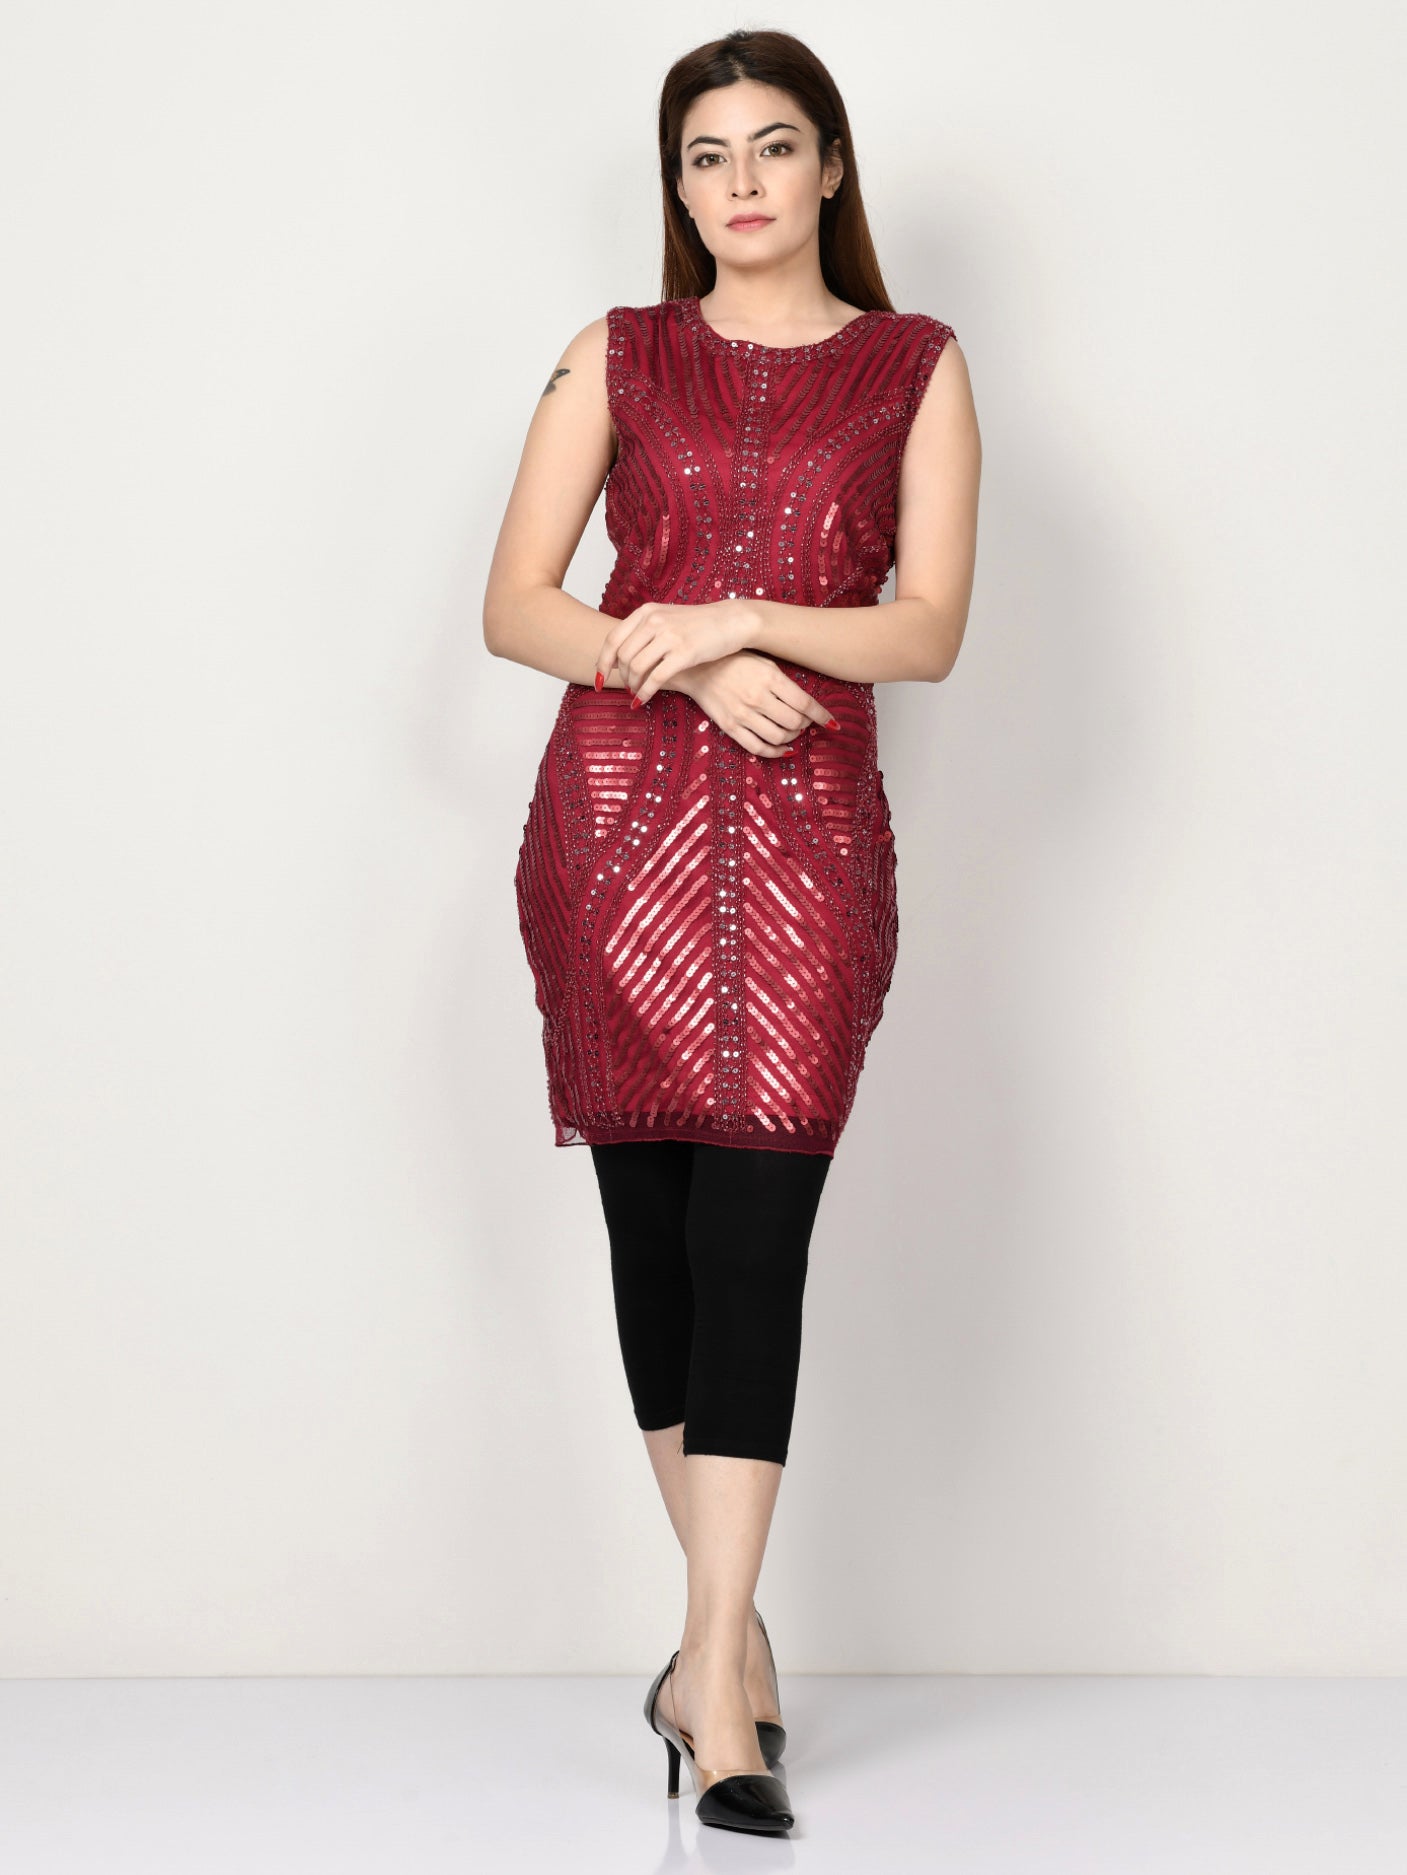 Embellished Net Dress - Dark Red